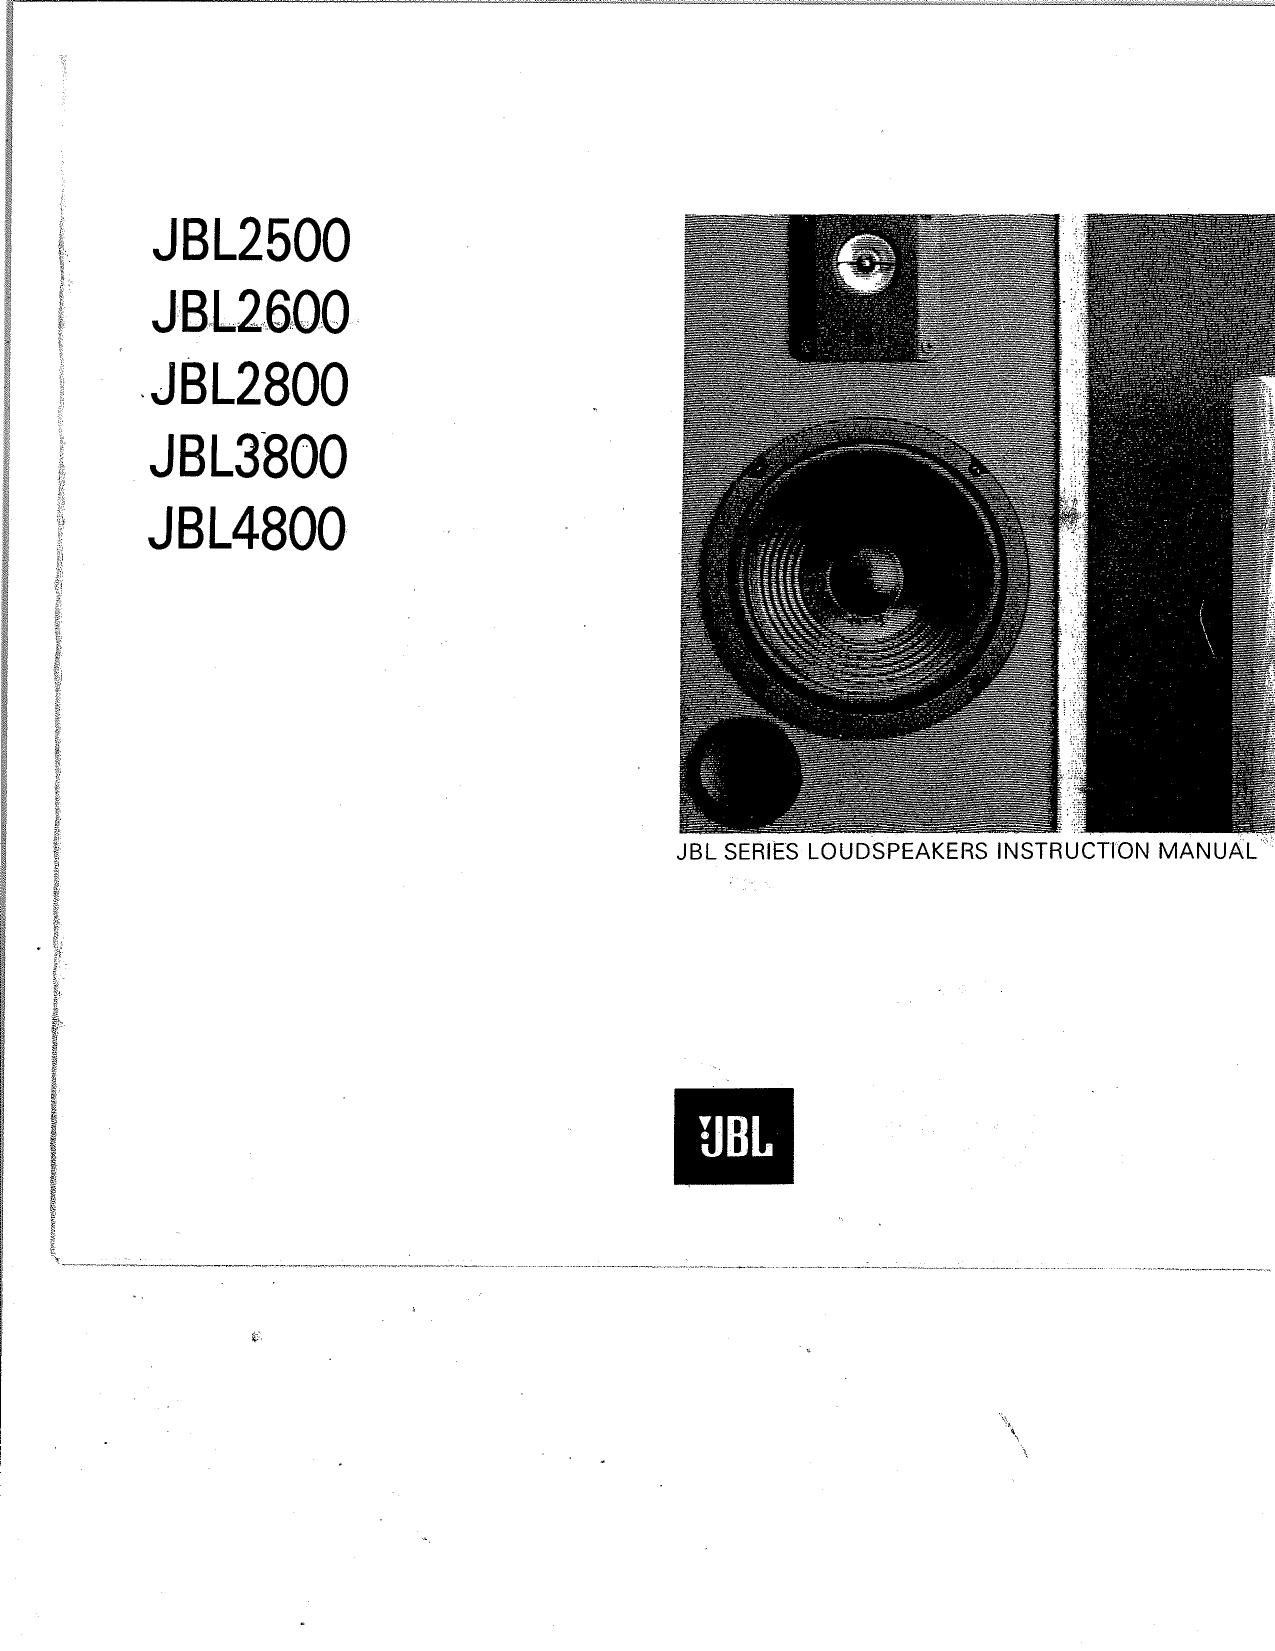 Jbl 2500 Owners Manual